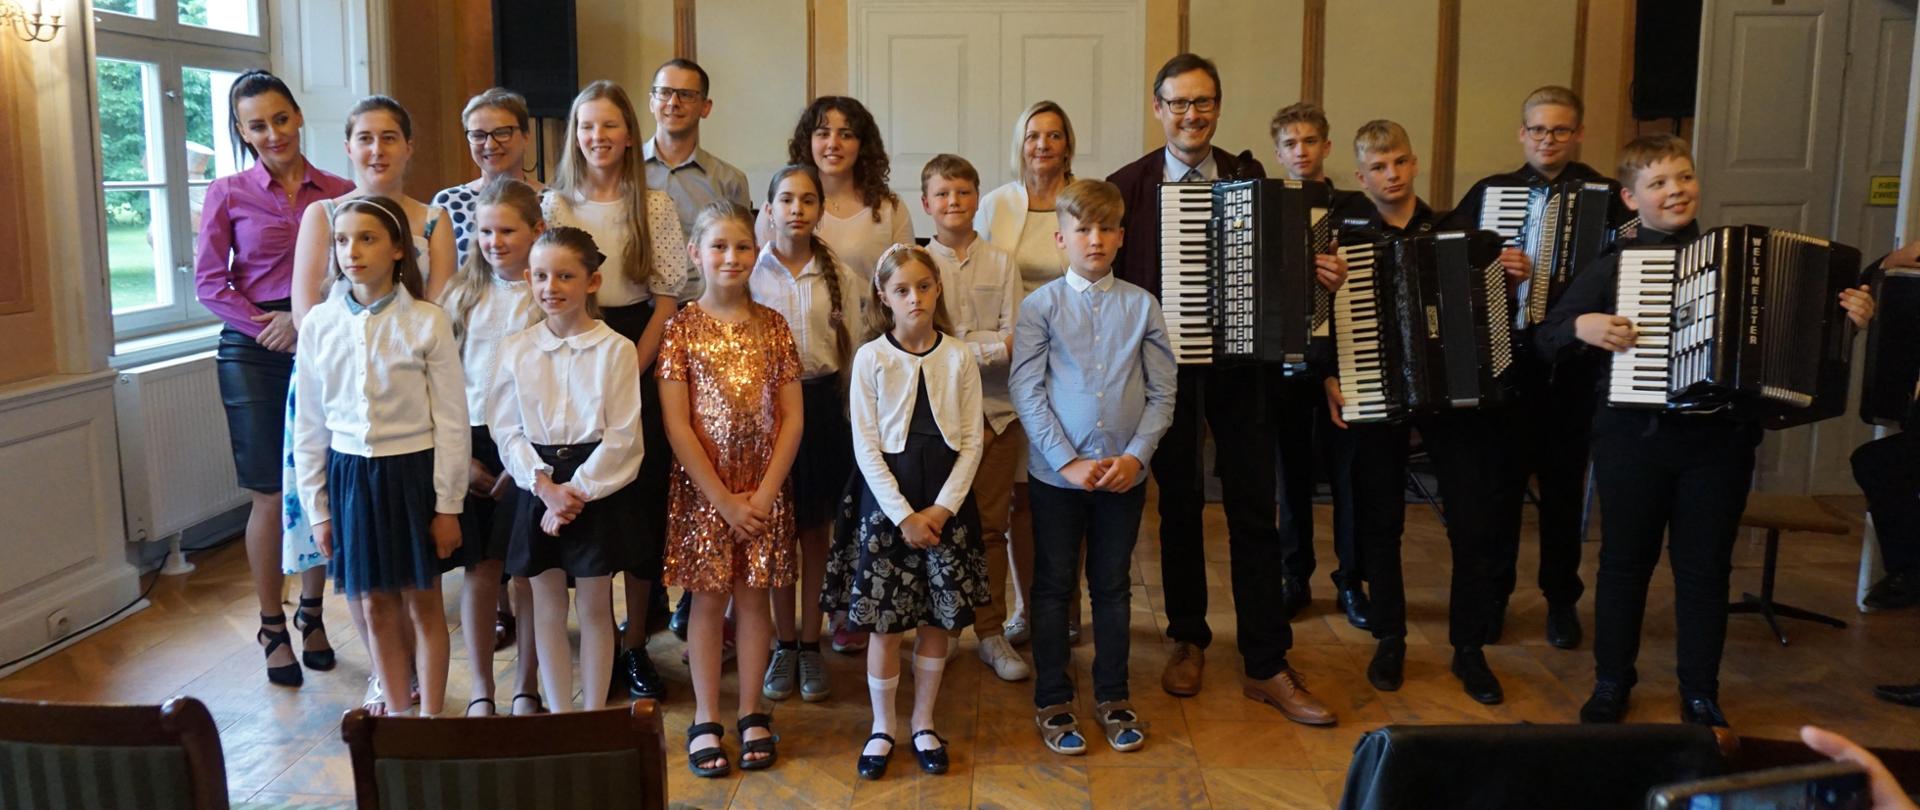 W sali balowej wejherowskiego Muzeum pozują do zdjęcia uczniowie Kursu Muzykowania oraz uczniowie i nauczyciele Państwowej Szkoły Muzycznej I st. w Wejherowie.